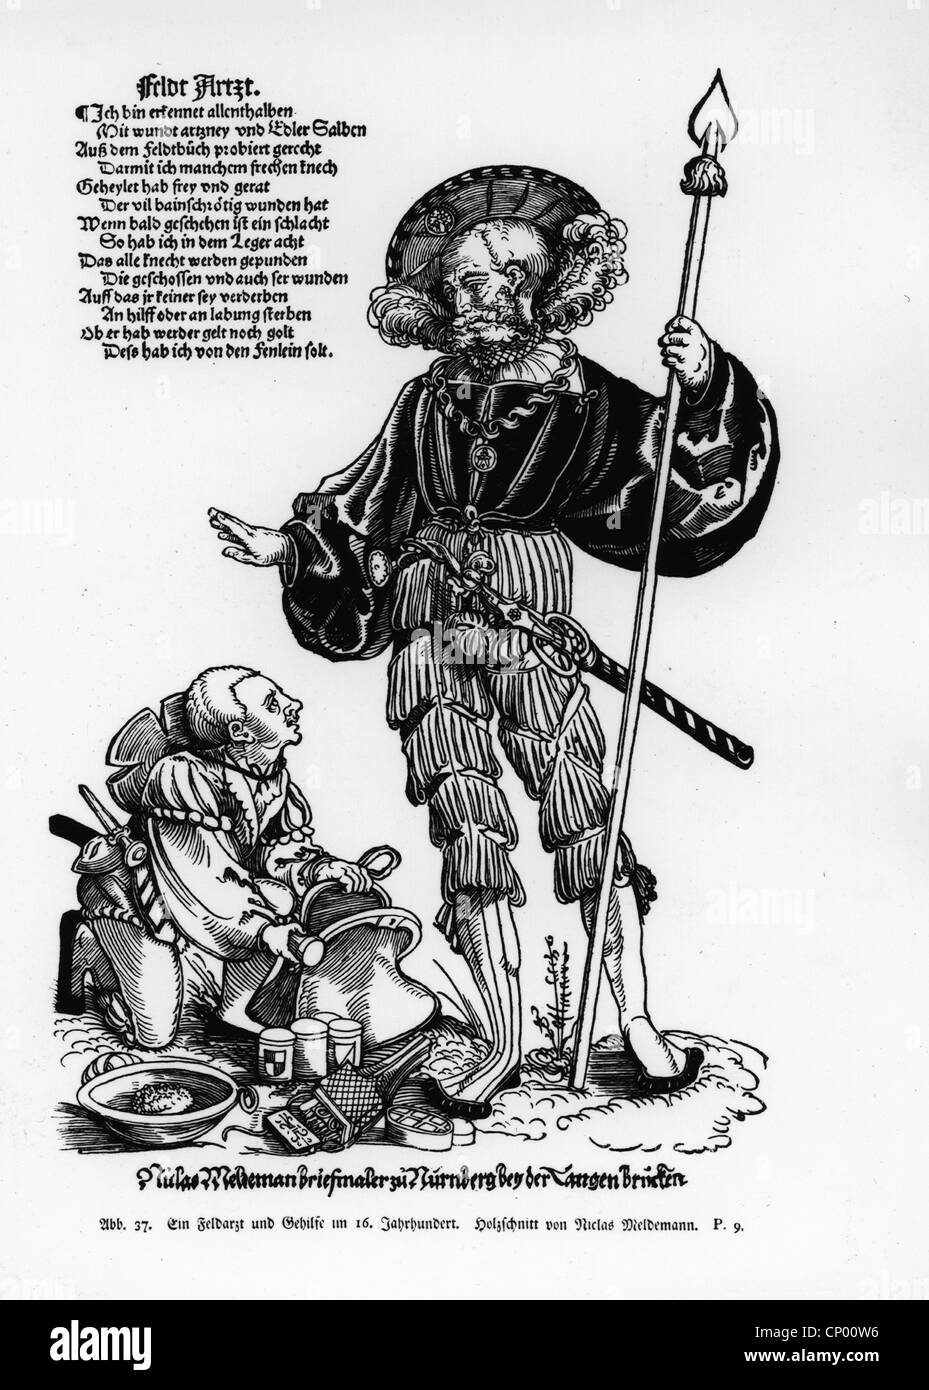 Medizin, Narkose, Narkose Schwamm, Militärchirurg mit seinem Assistenten, 16. Jahrhundert, Holzschnitt von Niclas Meldemann, um 1530, Zusatzrechte-Clearenzen-nicht vorhanden Stockfoto